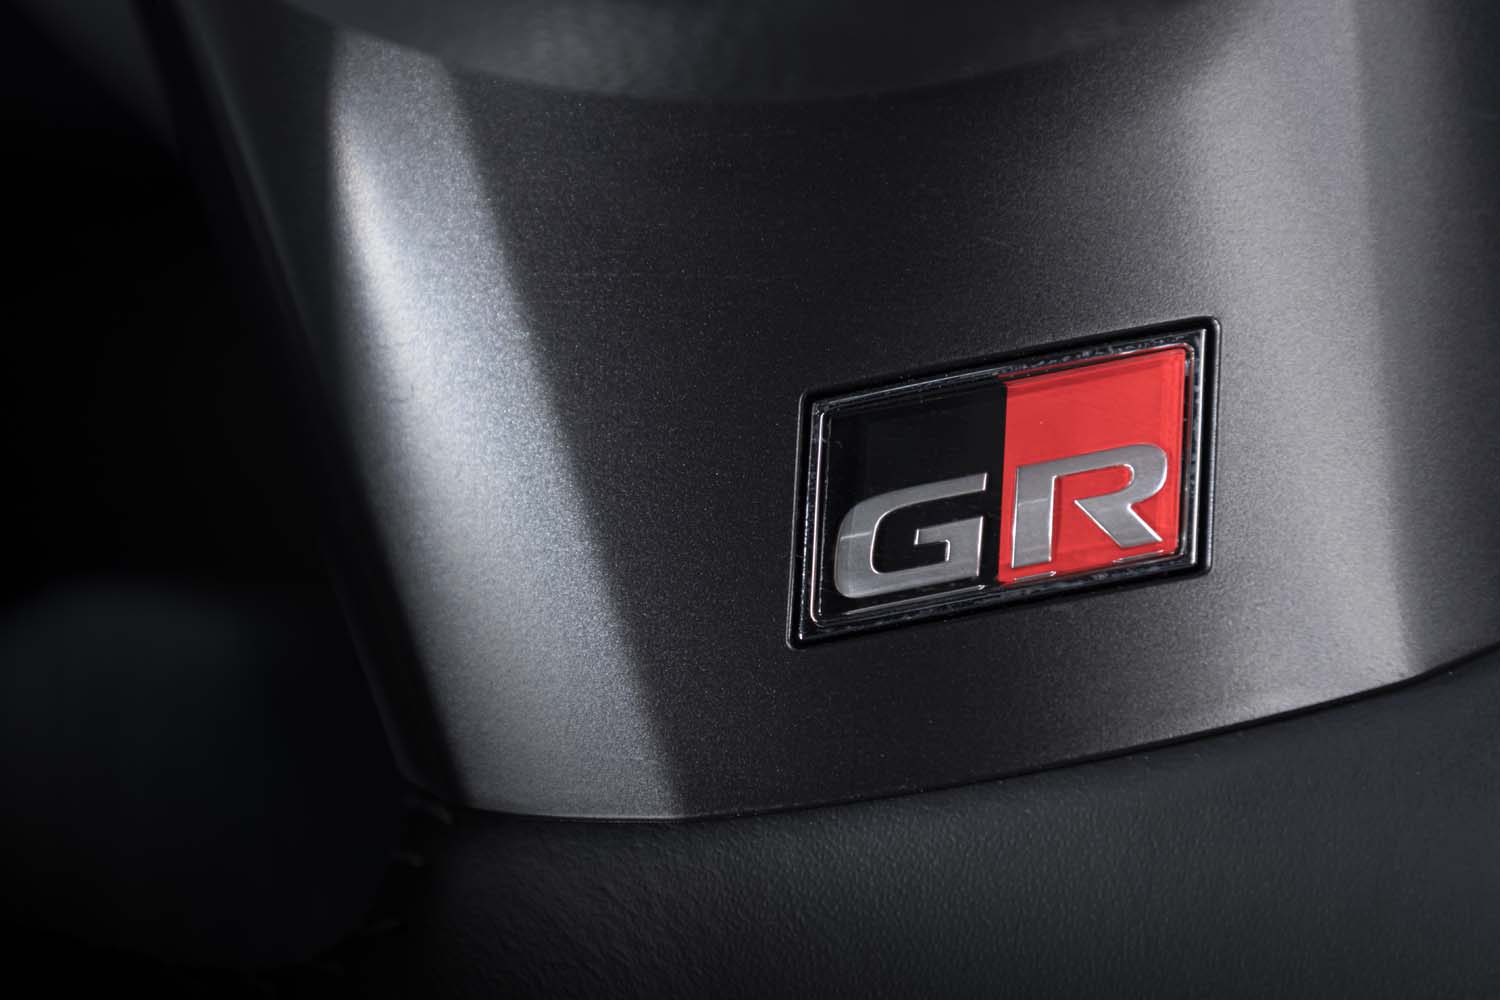 ステアリングホイールのスポーク部をはじめ、シートやメーターパネルなど、車内の各所に「GR」ロゴが添えられる。